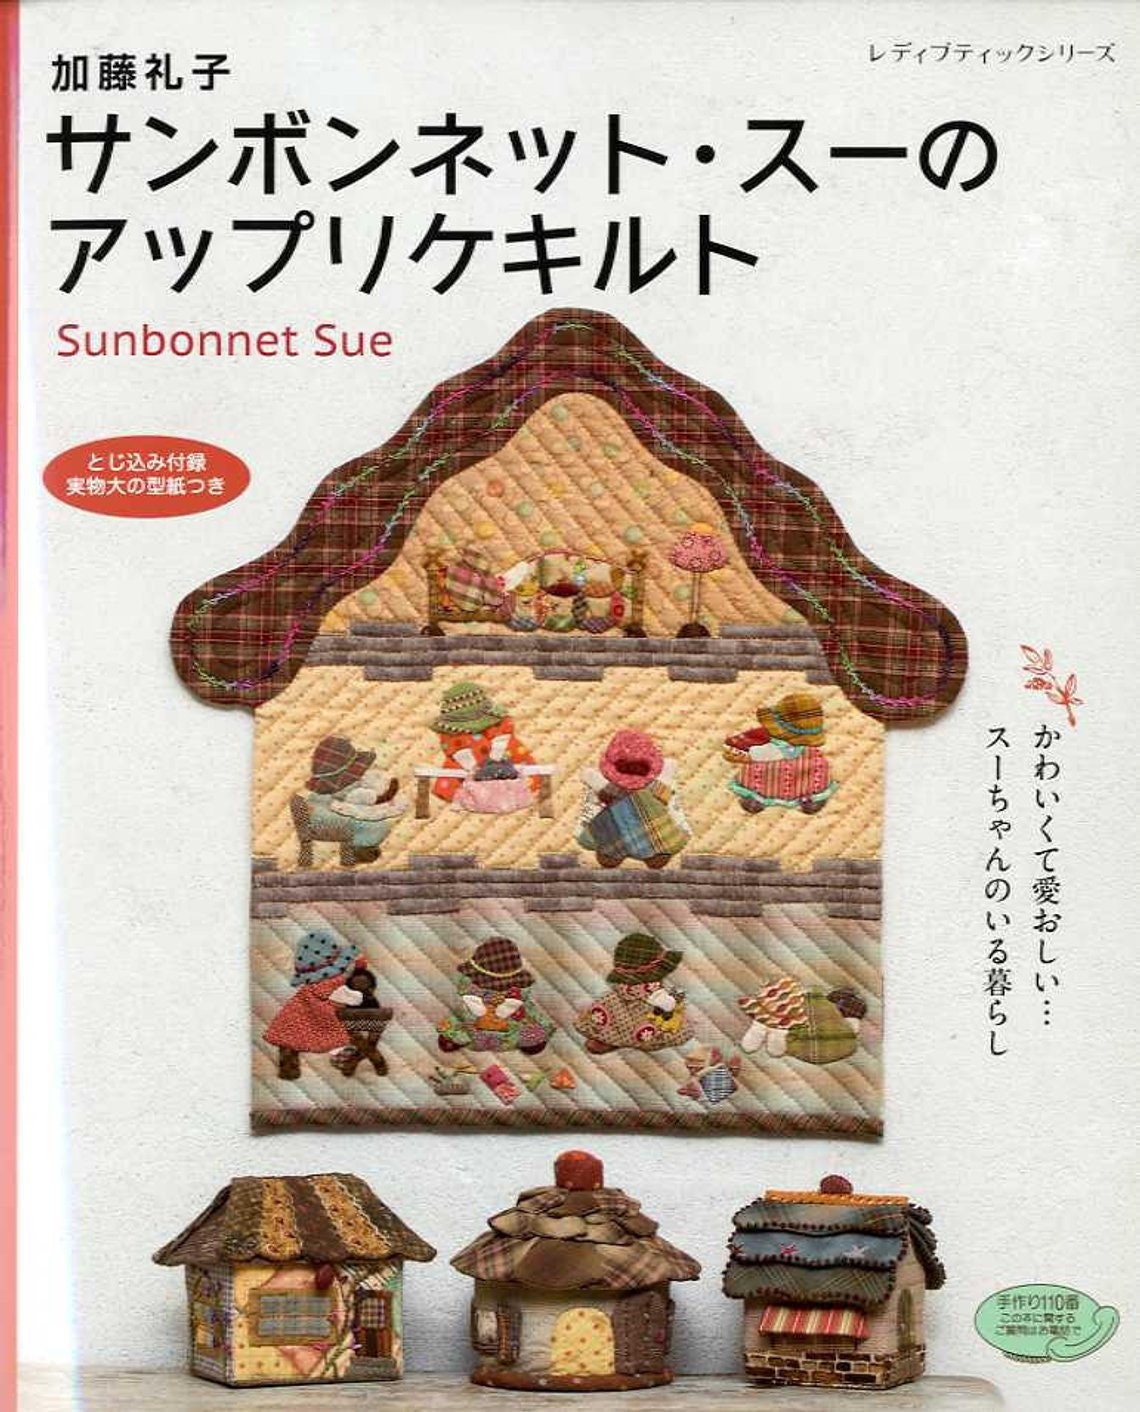 Leisure Arts Ultimate Sunbonnet Sue Collection BK